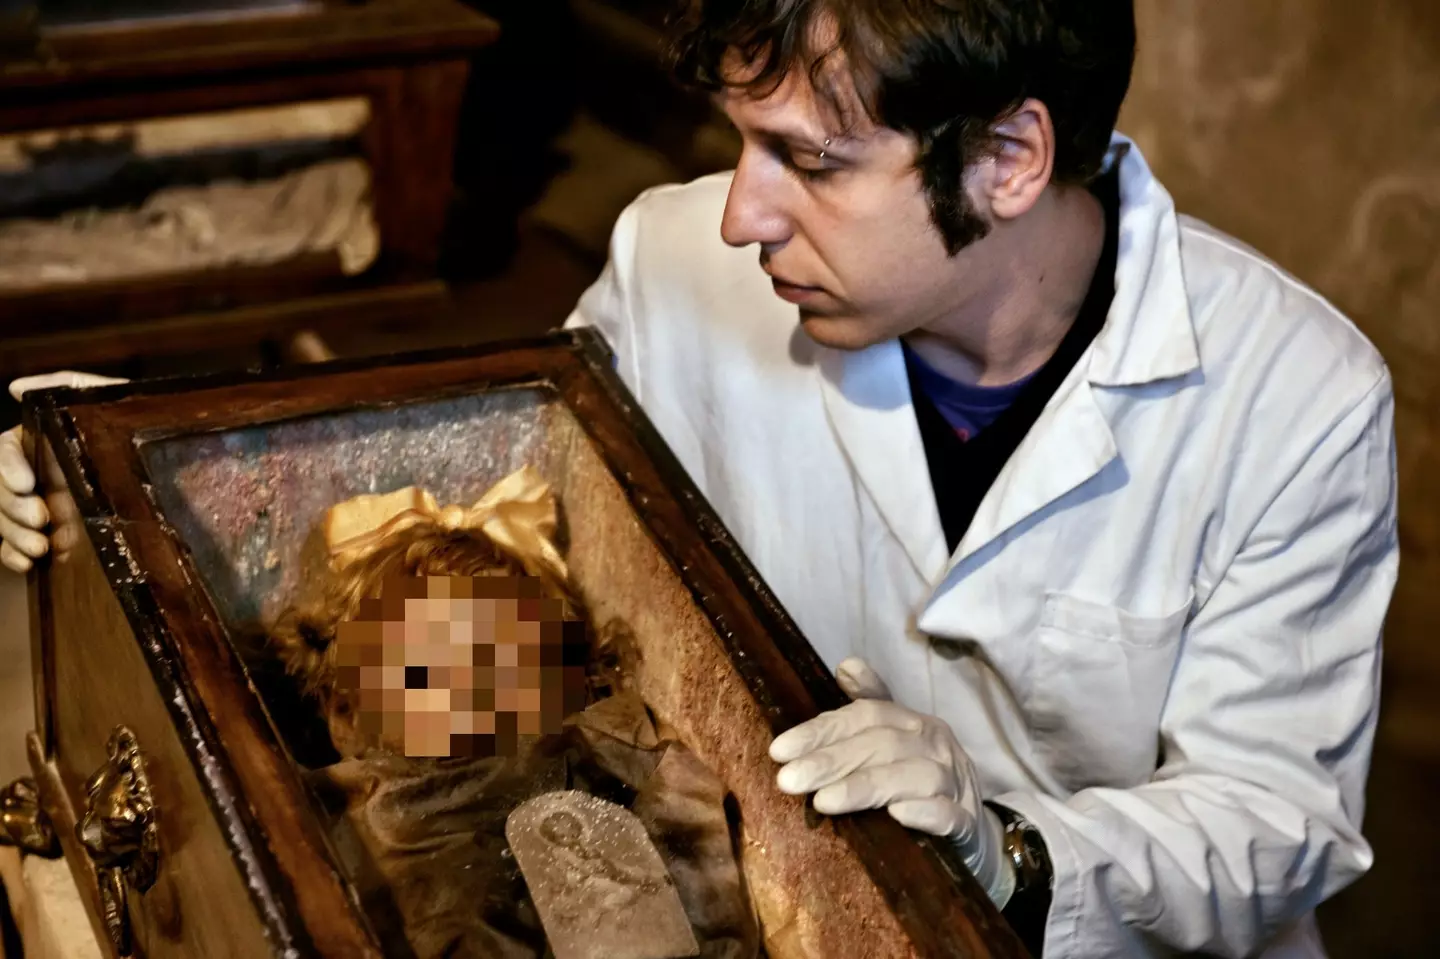 Pessoas estão perplexas com a forma como os restos mumificados de menina de 2 anos estão